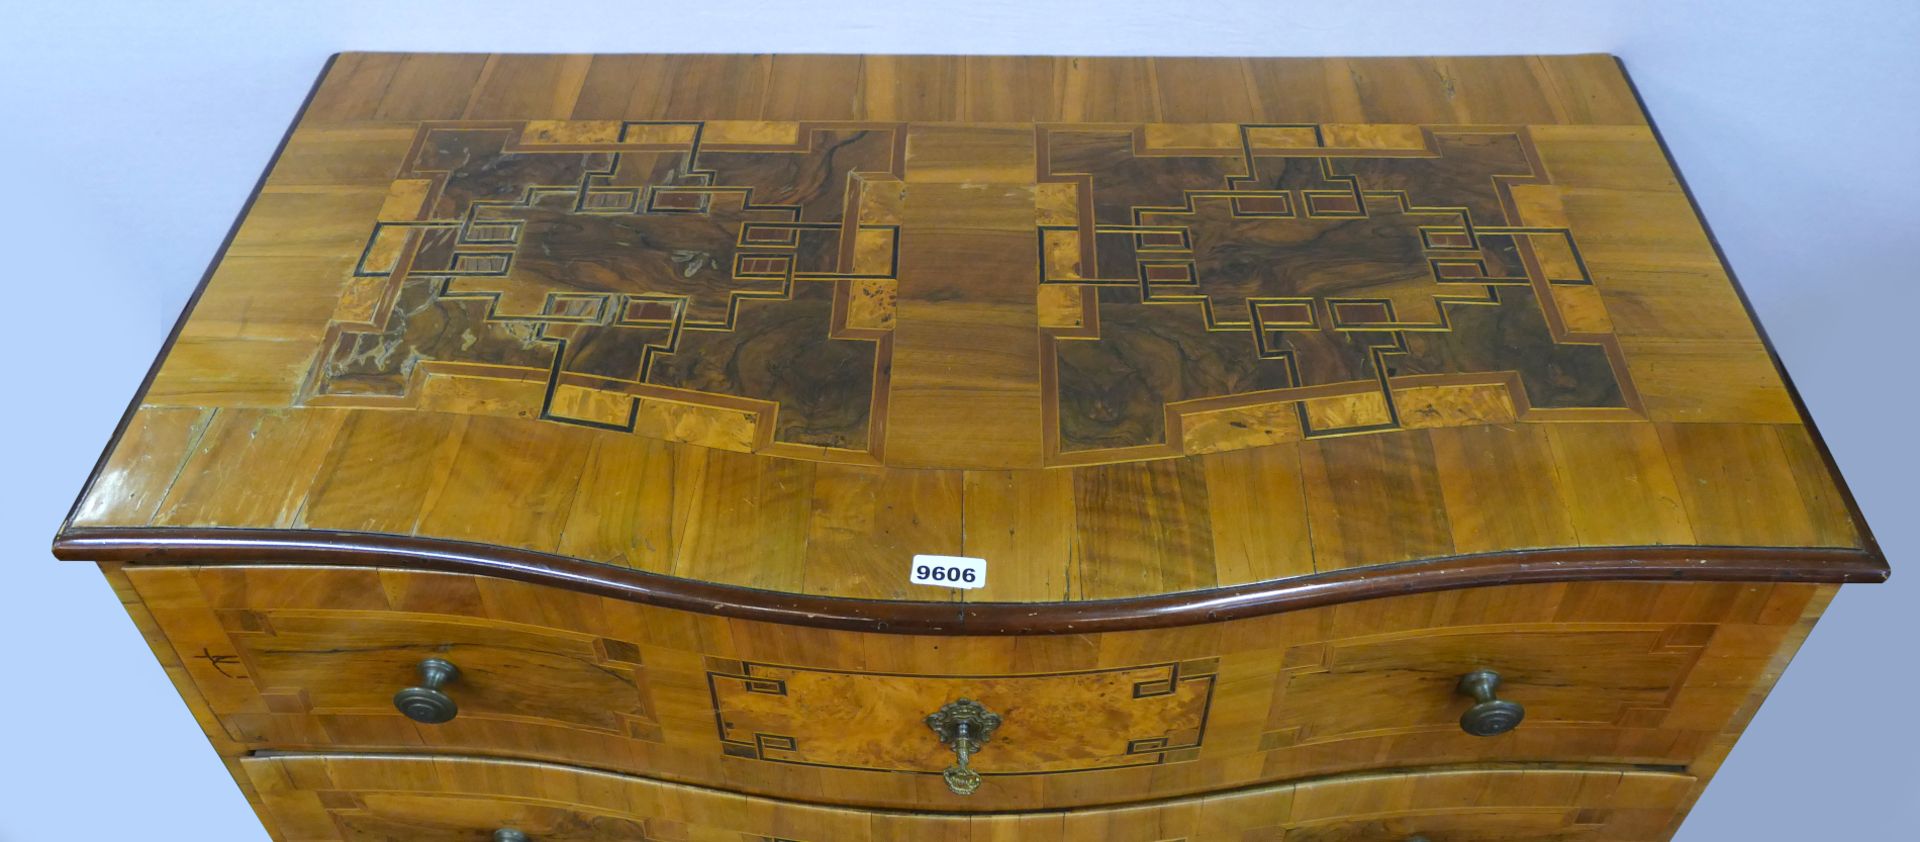 1 Barockkommode Holz furniert, 3 Schubladen und Deckplatte je mit Bandelwerk, ca. 88x117,5x60cm, - Bild 2 aus 3